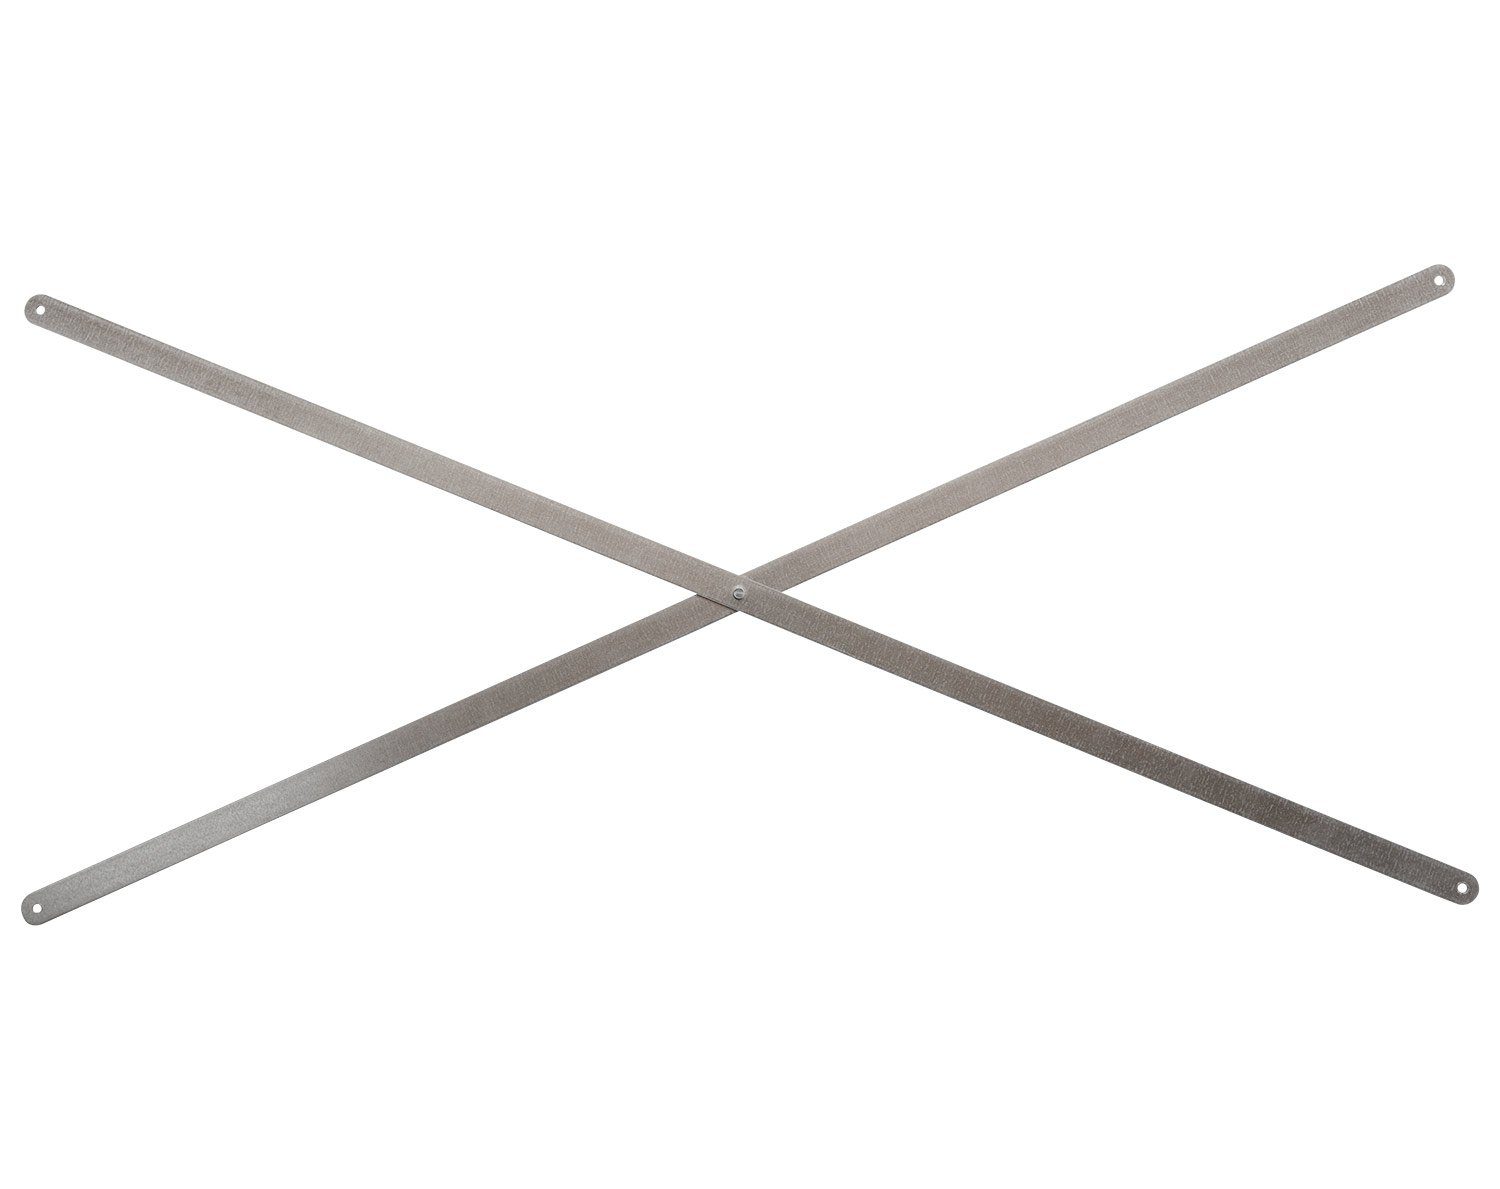 Regalelement Stabilisierungskreuz LASSE, H 93 cm, Stahlblech, für Regalsysteme mit einer Regalbreite von 76 cm